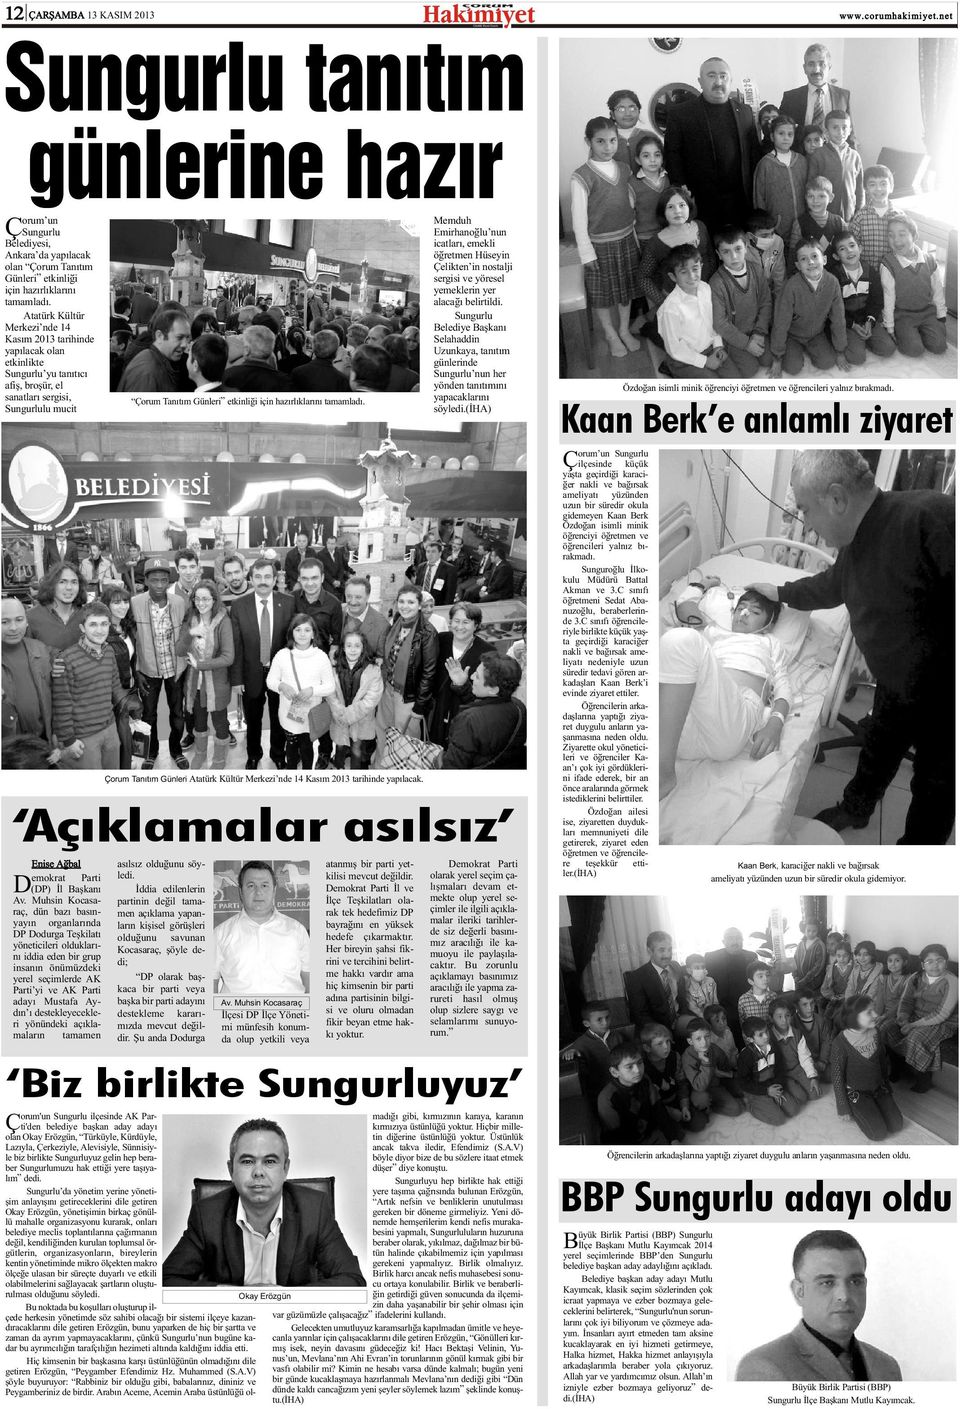 hazýrlýklarýný tamamladý. orum Tanýtým Günleri Atatürk Kültür Merkezi nde 14 Kasým 2013 tarihinde yapýlacak.